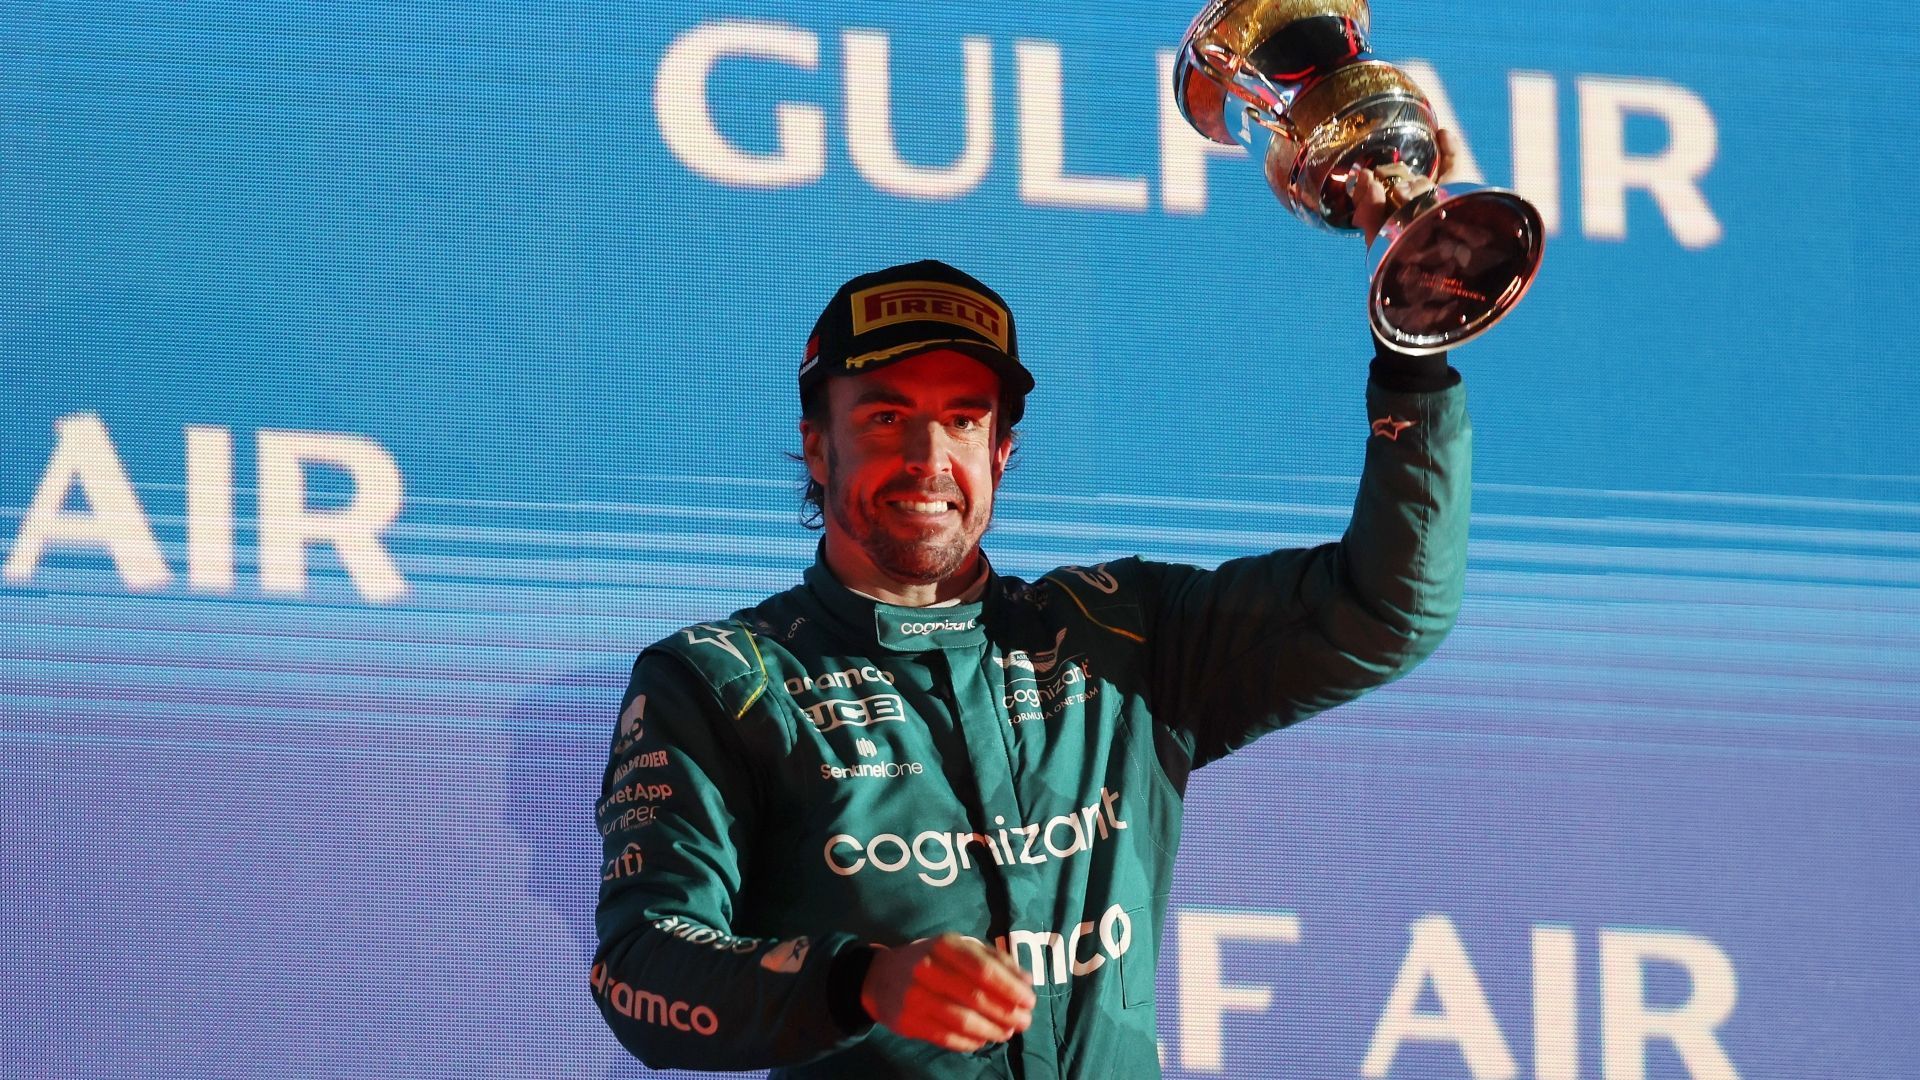 
                <strong>Gewinner: Fernando Alonso</strong><br>
                41 Jahre und in der "Form seines Lebens". Das sagt Red-Bull-Boss Helmut Marko über Alonso – und könnte damit recht haben. Der Spanier erinnert im enorm verbesserten Aston Martin stark an seine Glanzzeiten bei Benetton und Ferrari. Seine Überholmanöver gegen Hamilton und Sainz alleine sind das Eintrittsgeld wert. Gekrönt wird die Alonso-Show mit dem Podium.
              